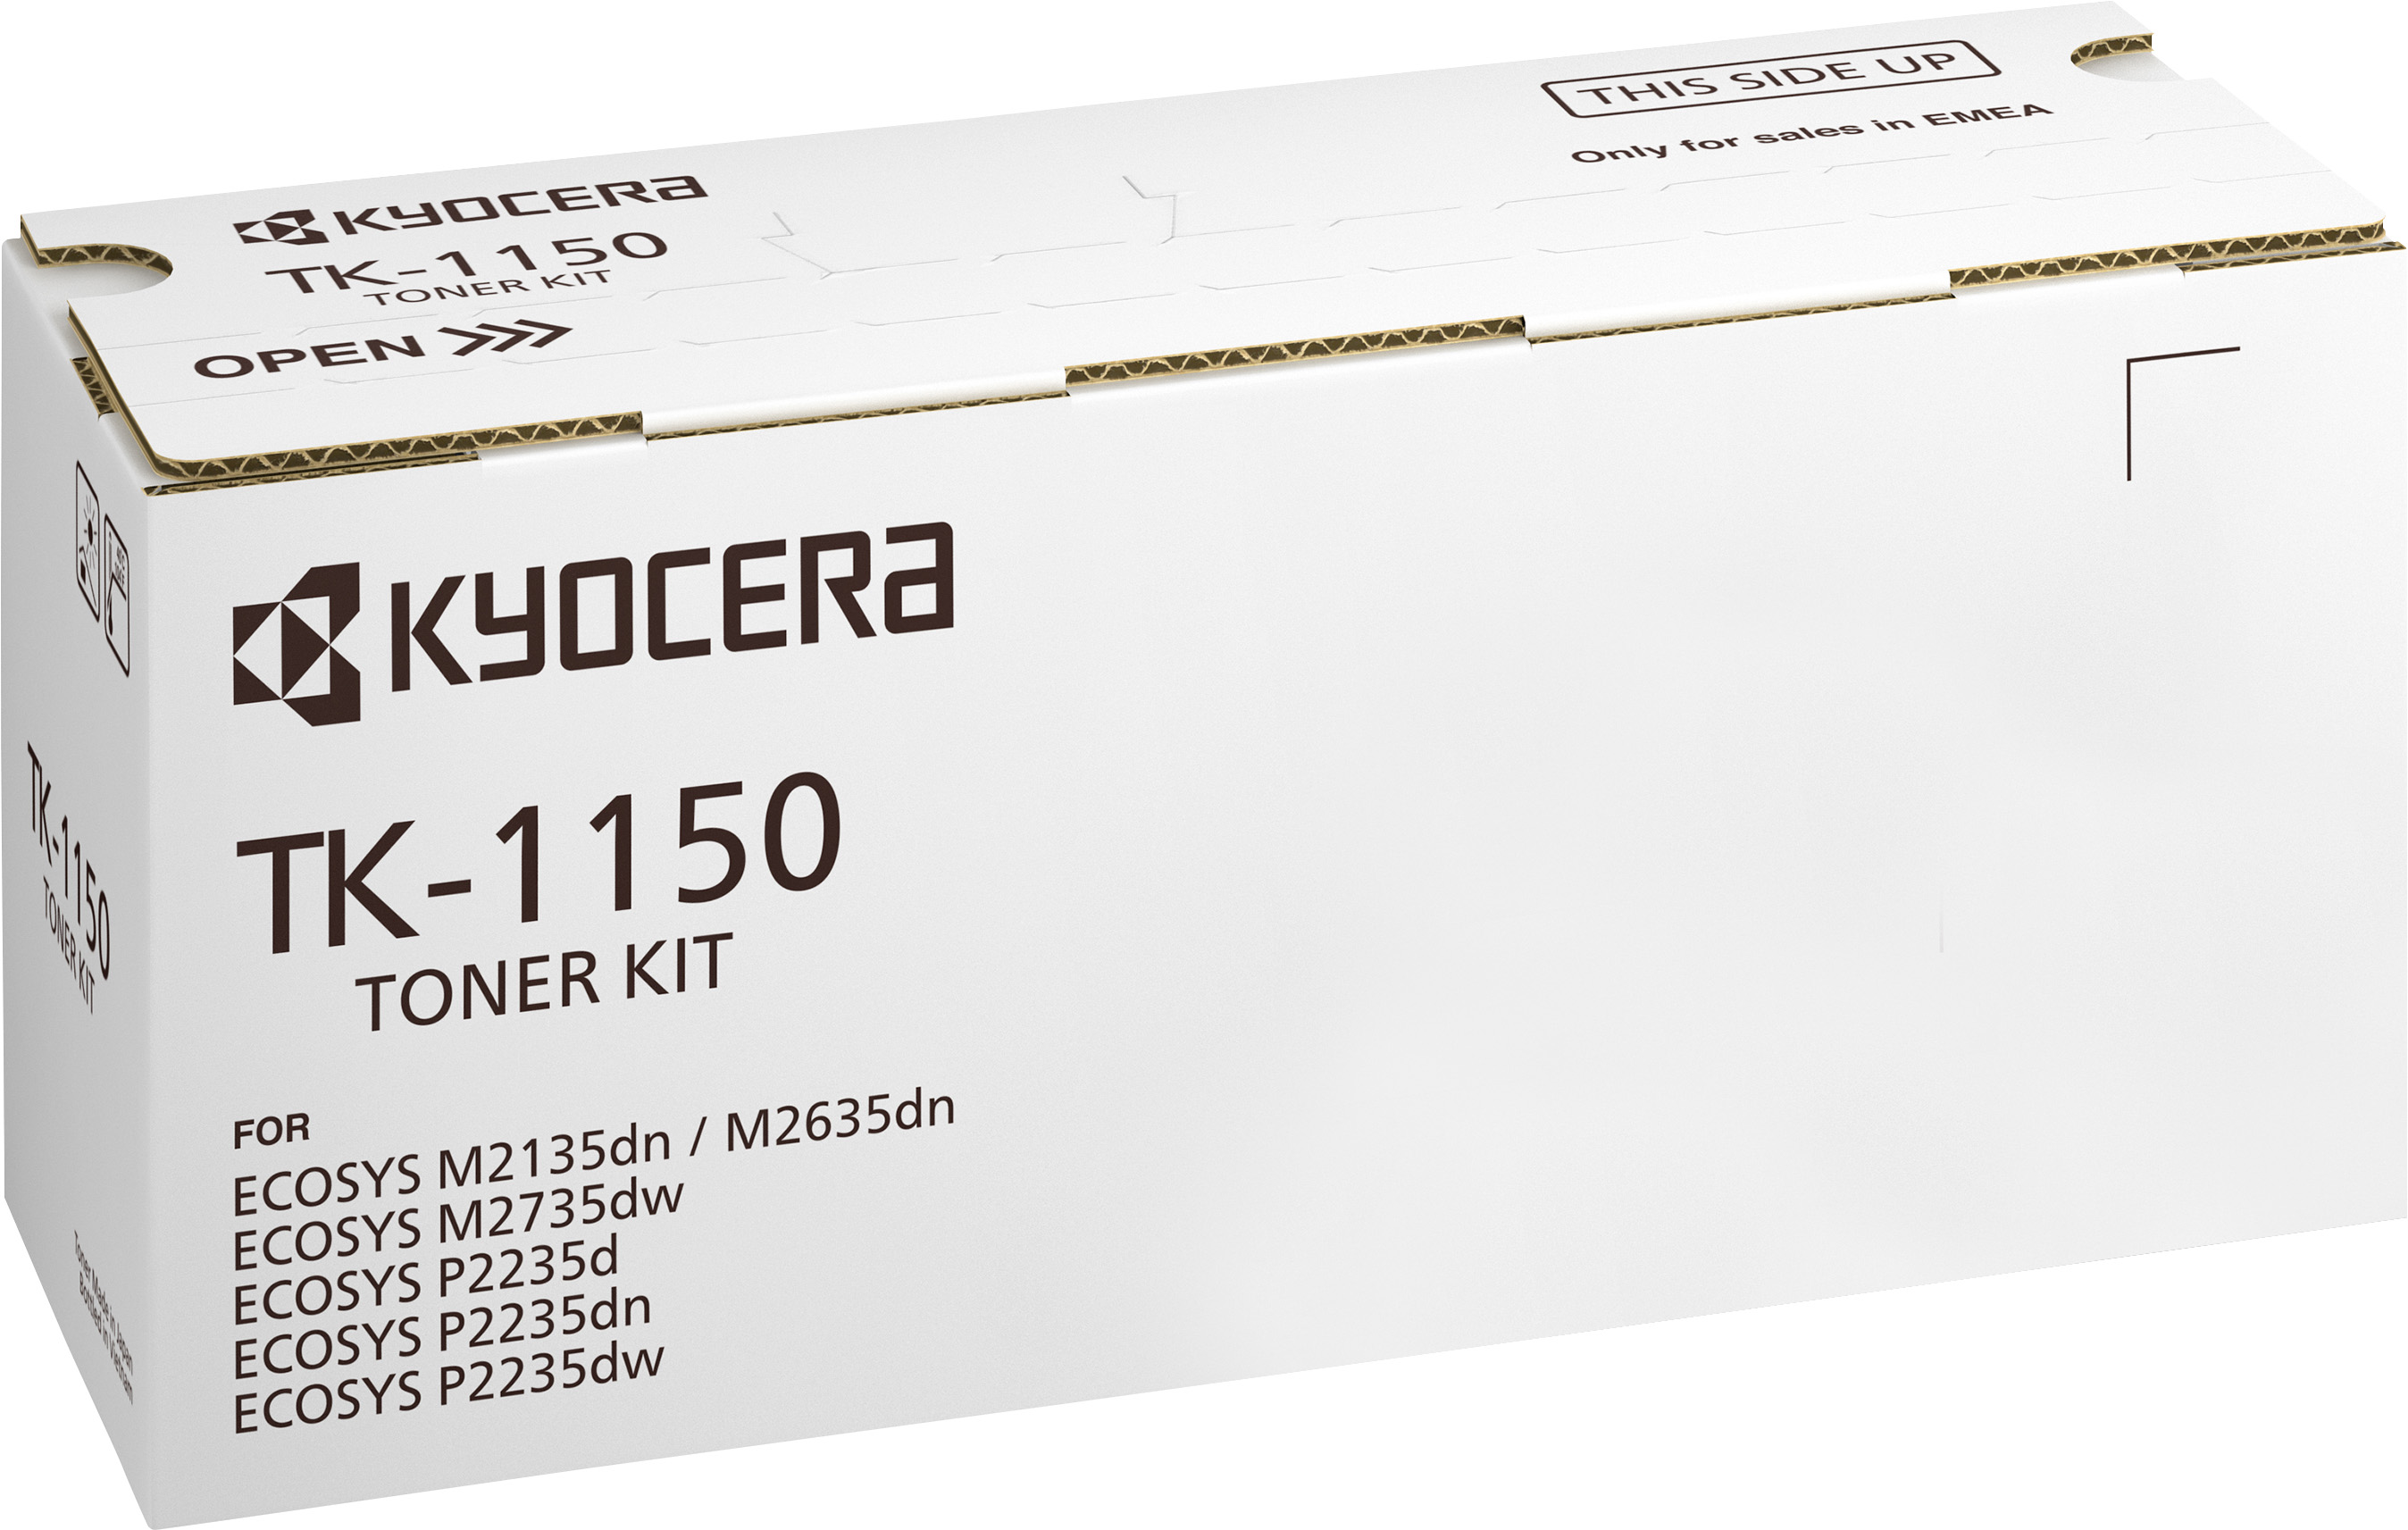 Kyocera Lasertoner TK-1150 schwarz 3.000 Seiten